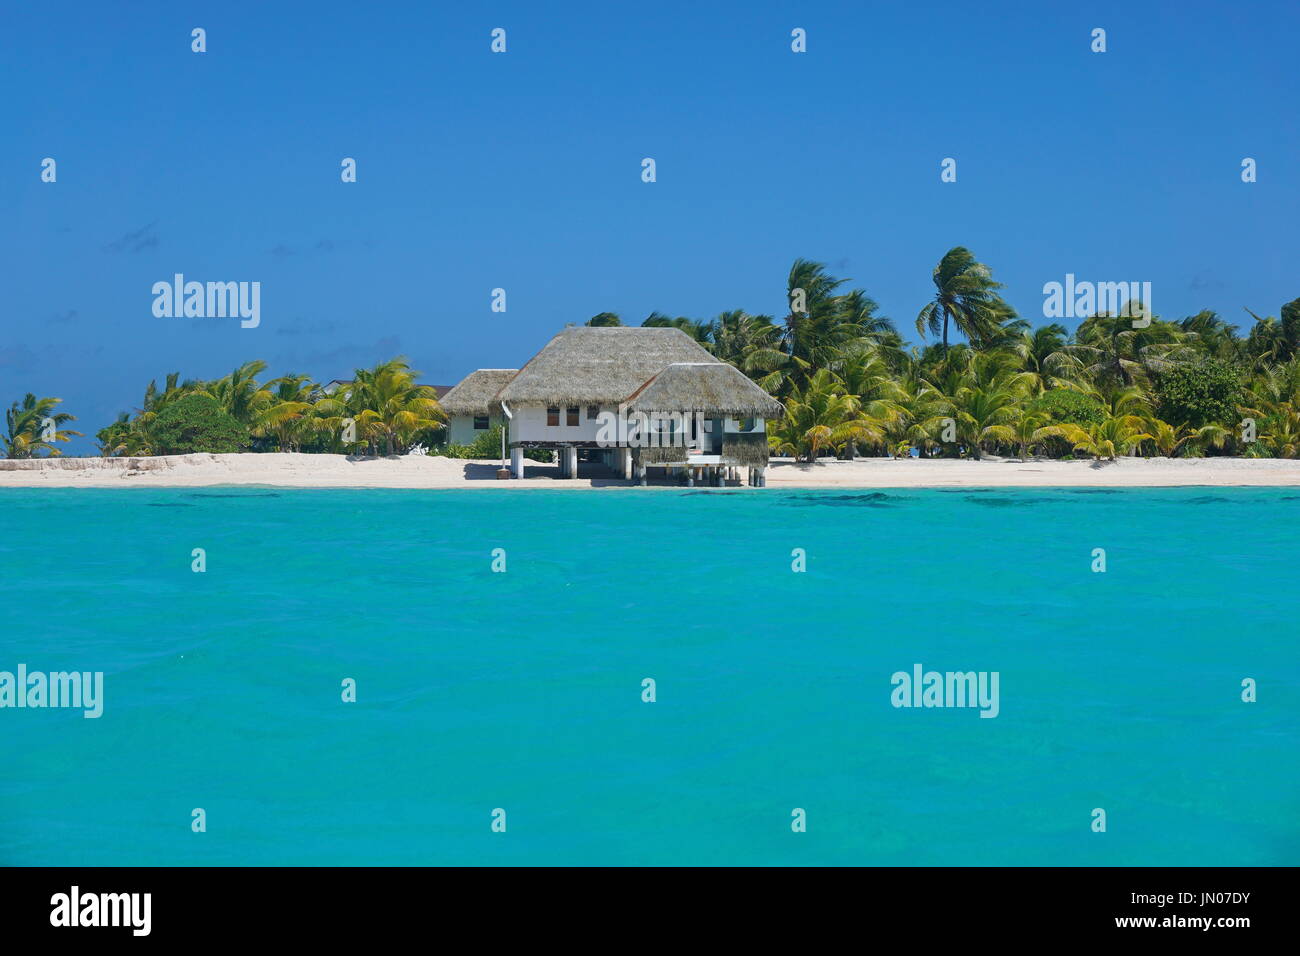 Costa con un tropical beach house e acque turchesi della laguna interna, atollo di Tikehau, Tuamotus arcipelago, Polinesia francese, oceano pacifico Foto Stock